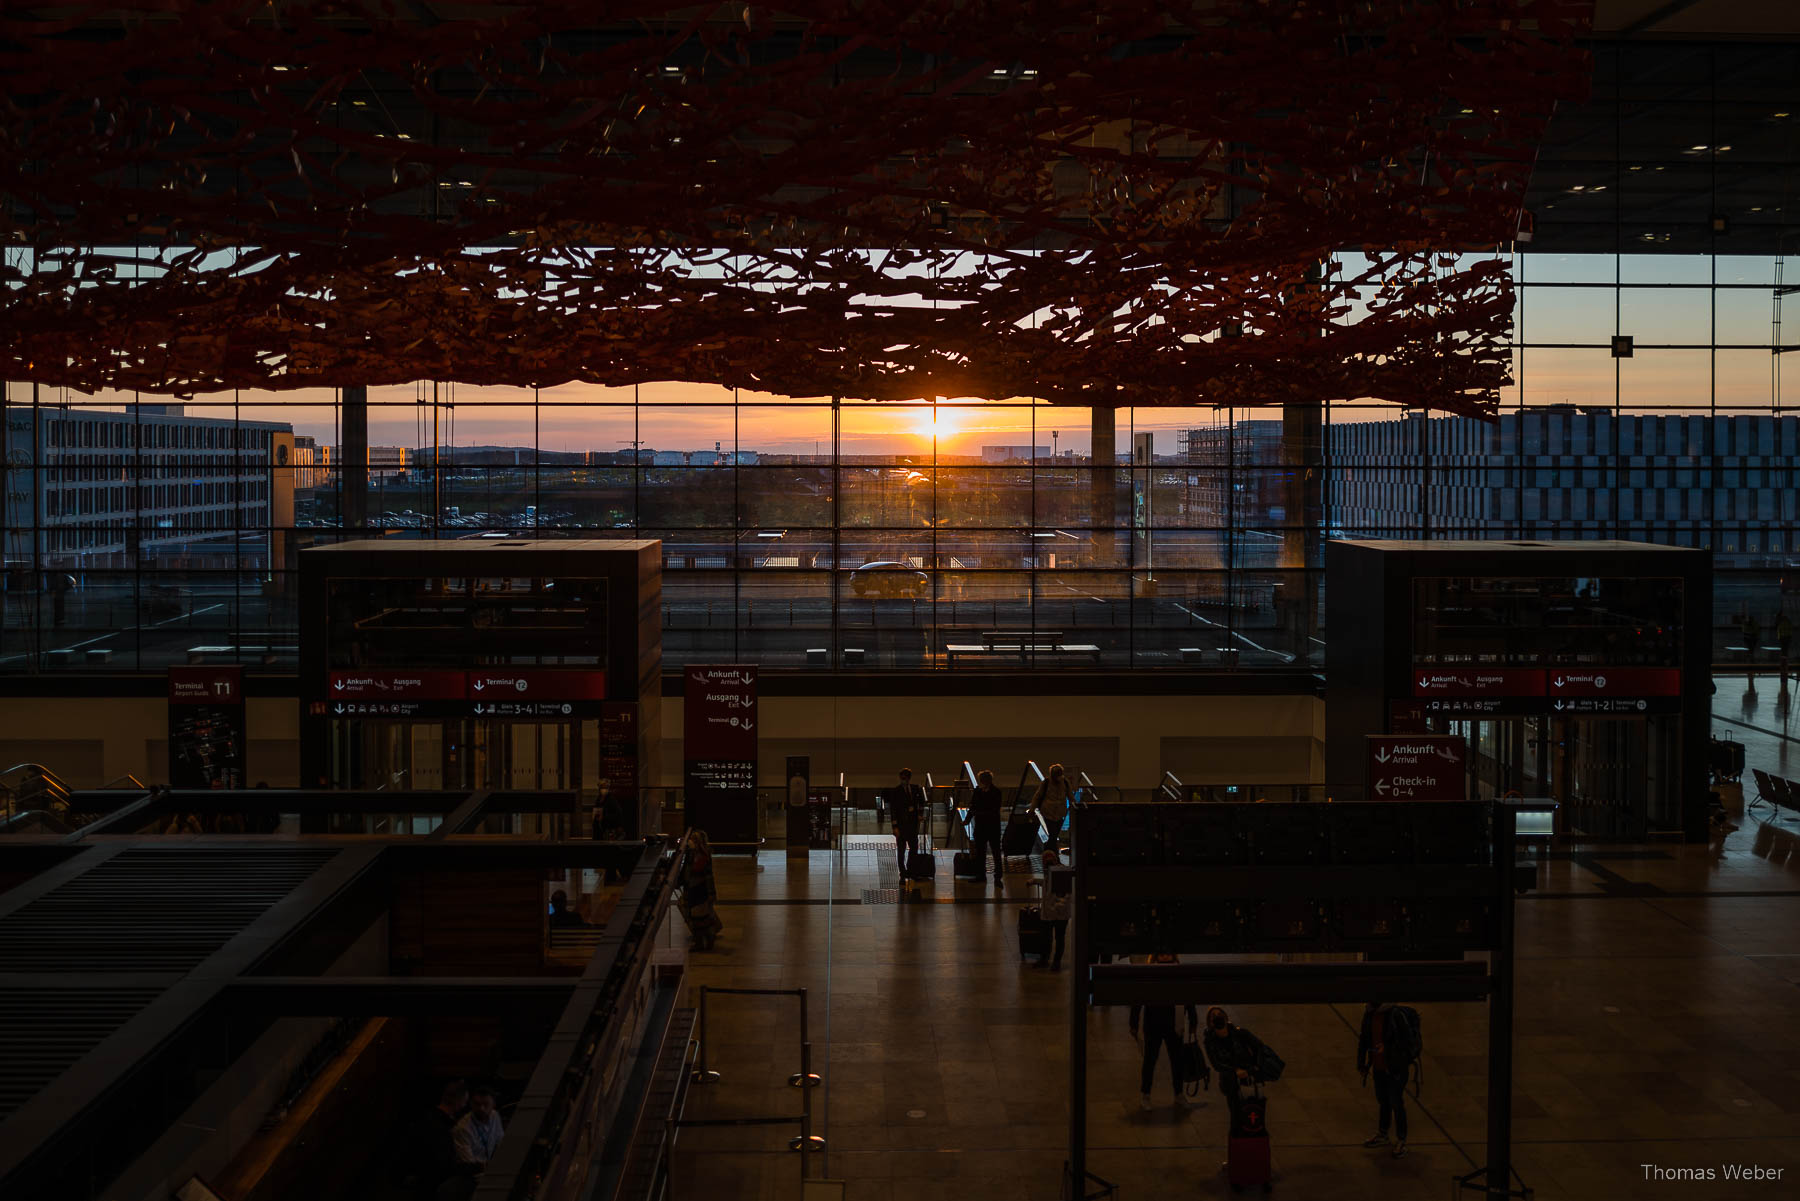 Der Flughafen BER in Berlin, Fotograf Thomas Weber aus Oldenburg